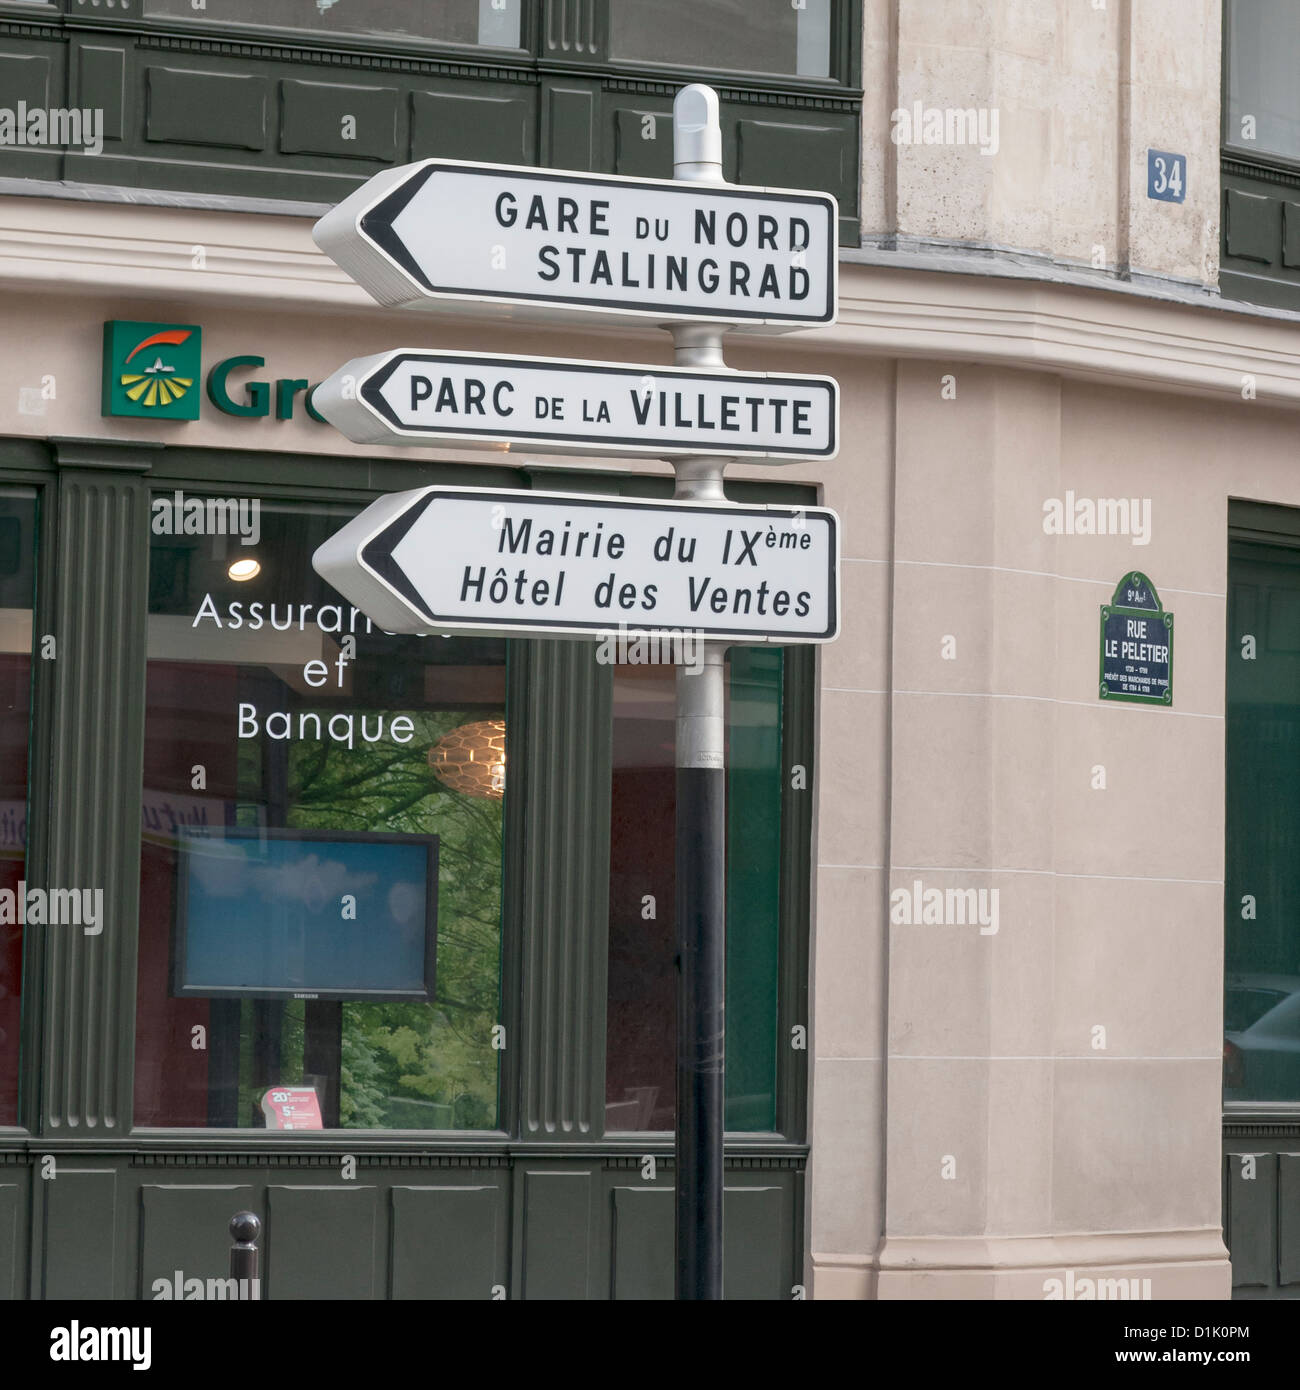 Parigi Francia Europa cartello stradale, Gare du Nord Stalingrad Parc de la Villette Mairie du IX Hotel des Vantes Foto Stock